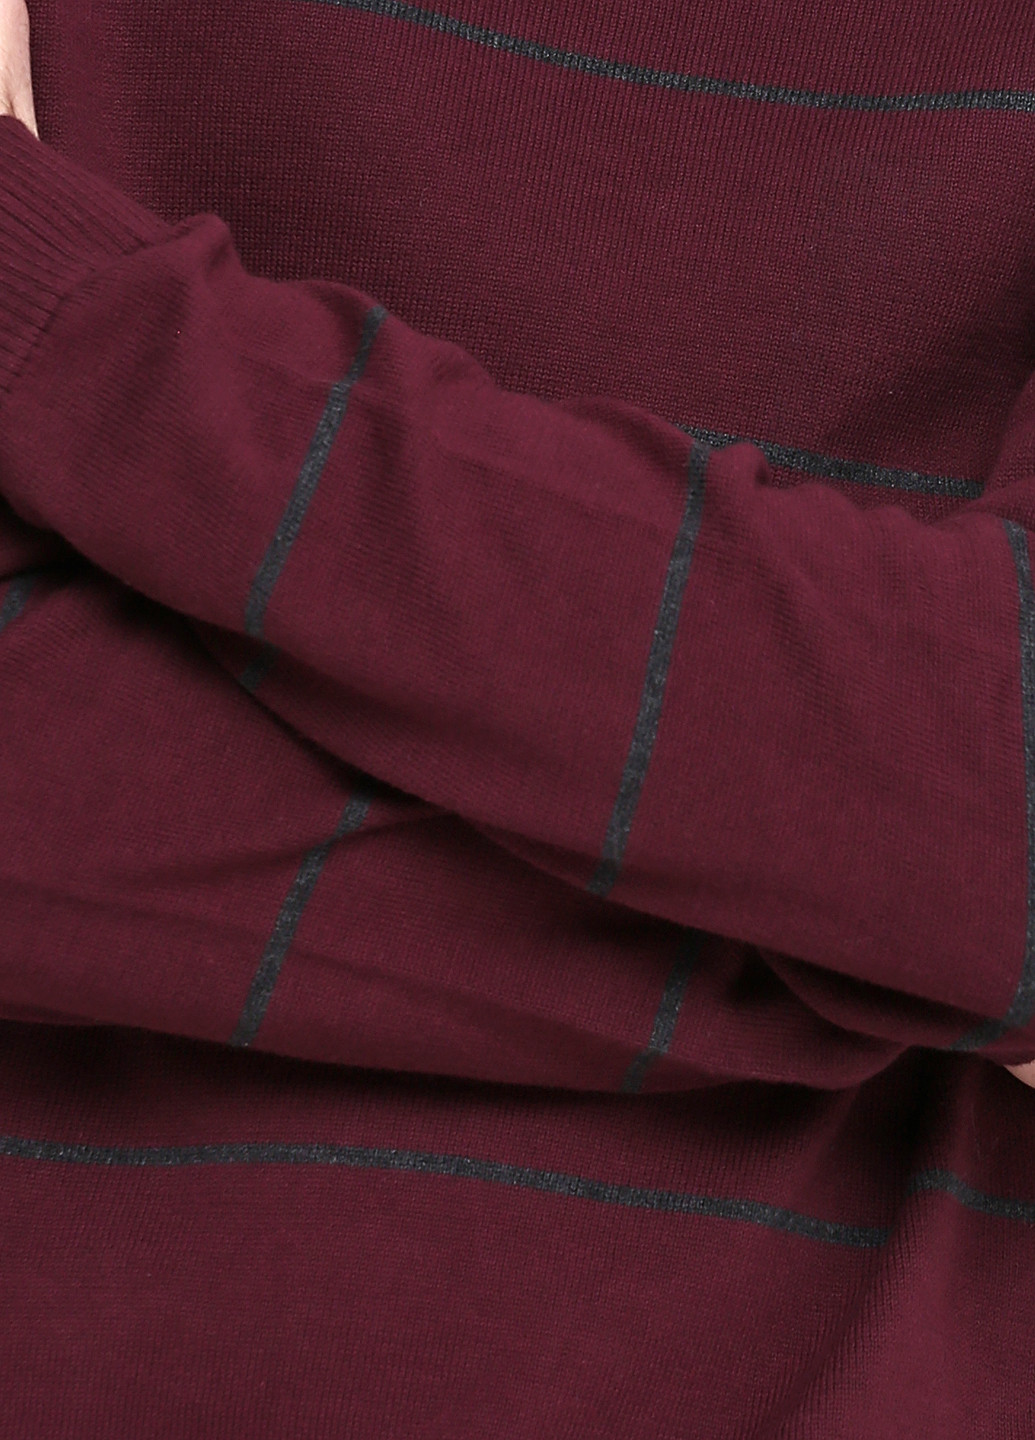 Фиолетовый демисезонный пуловер пуловер Filaton inc